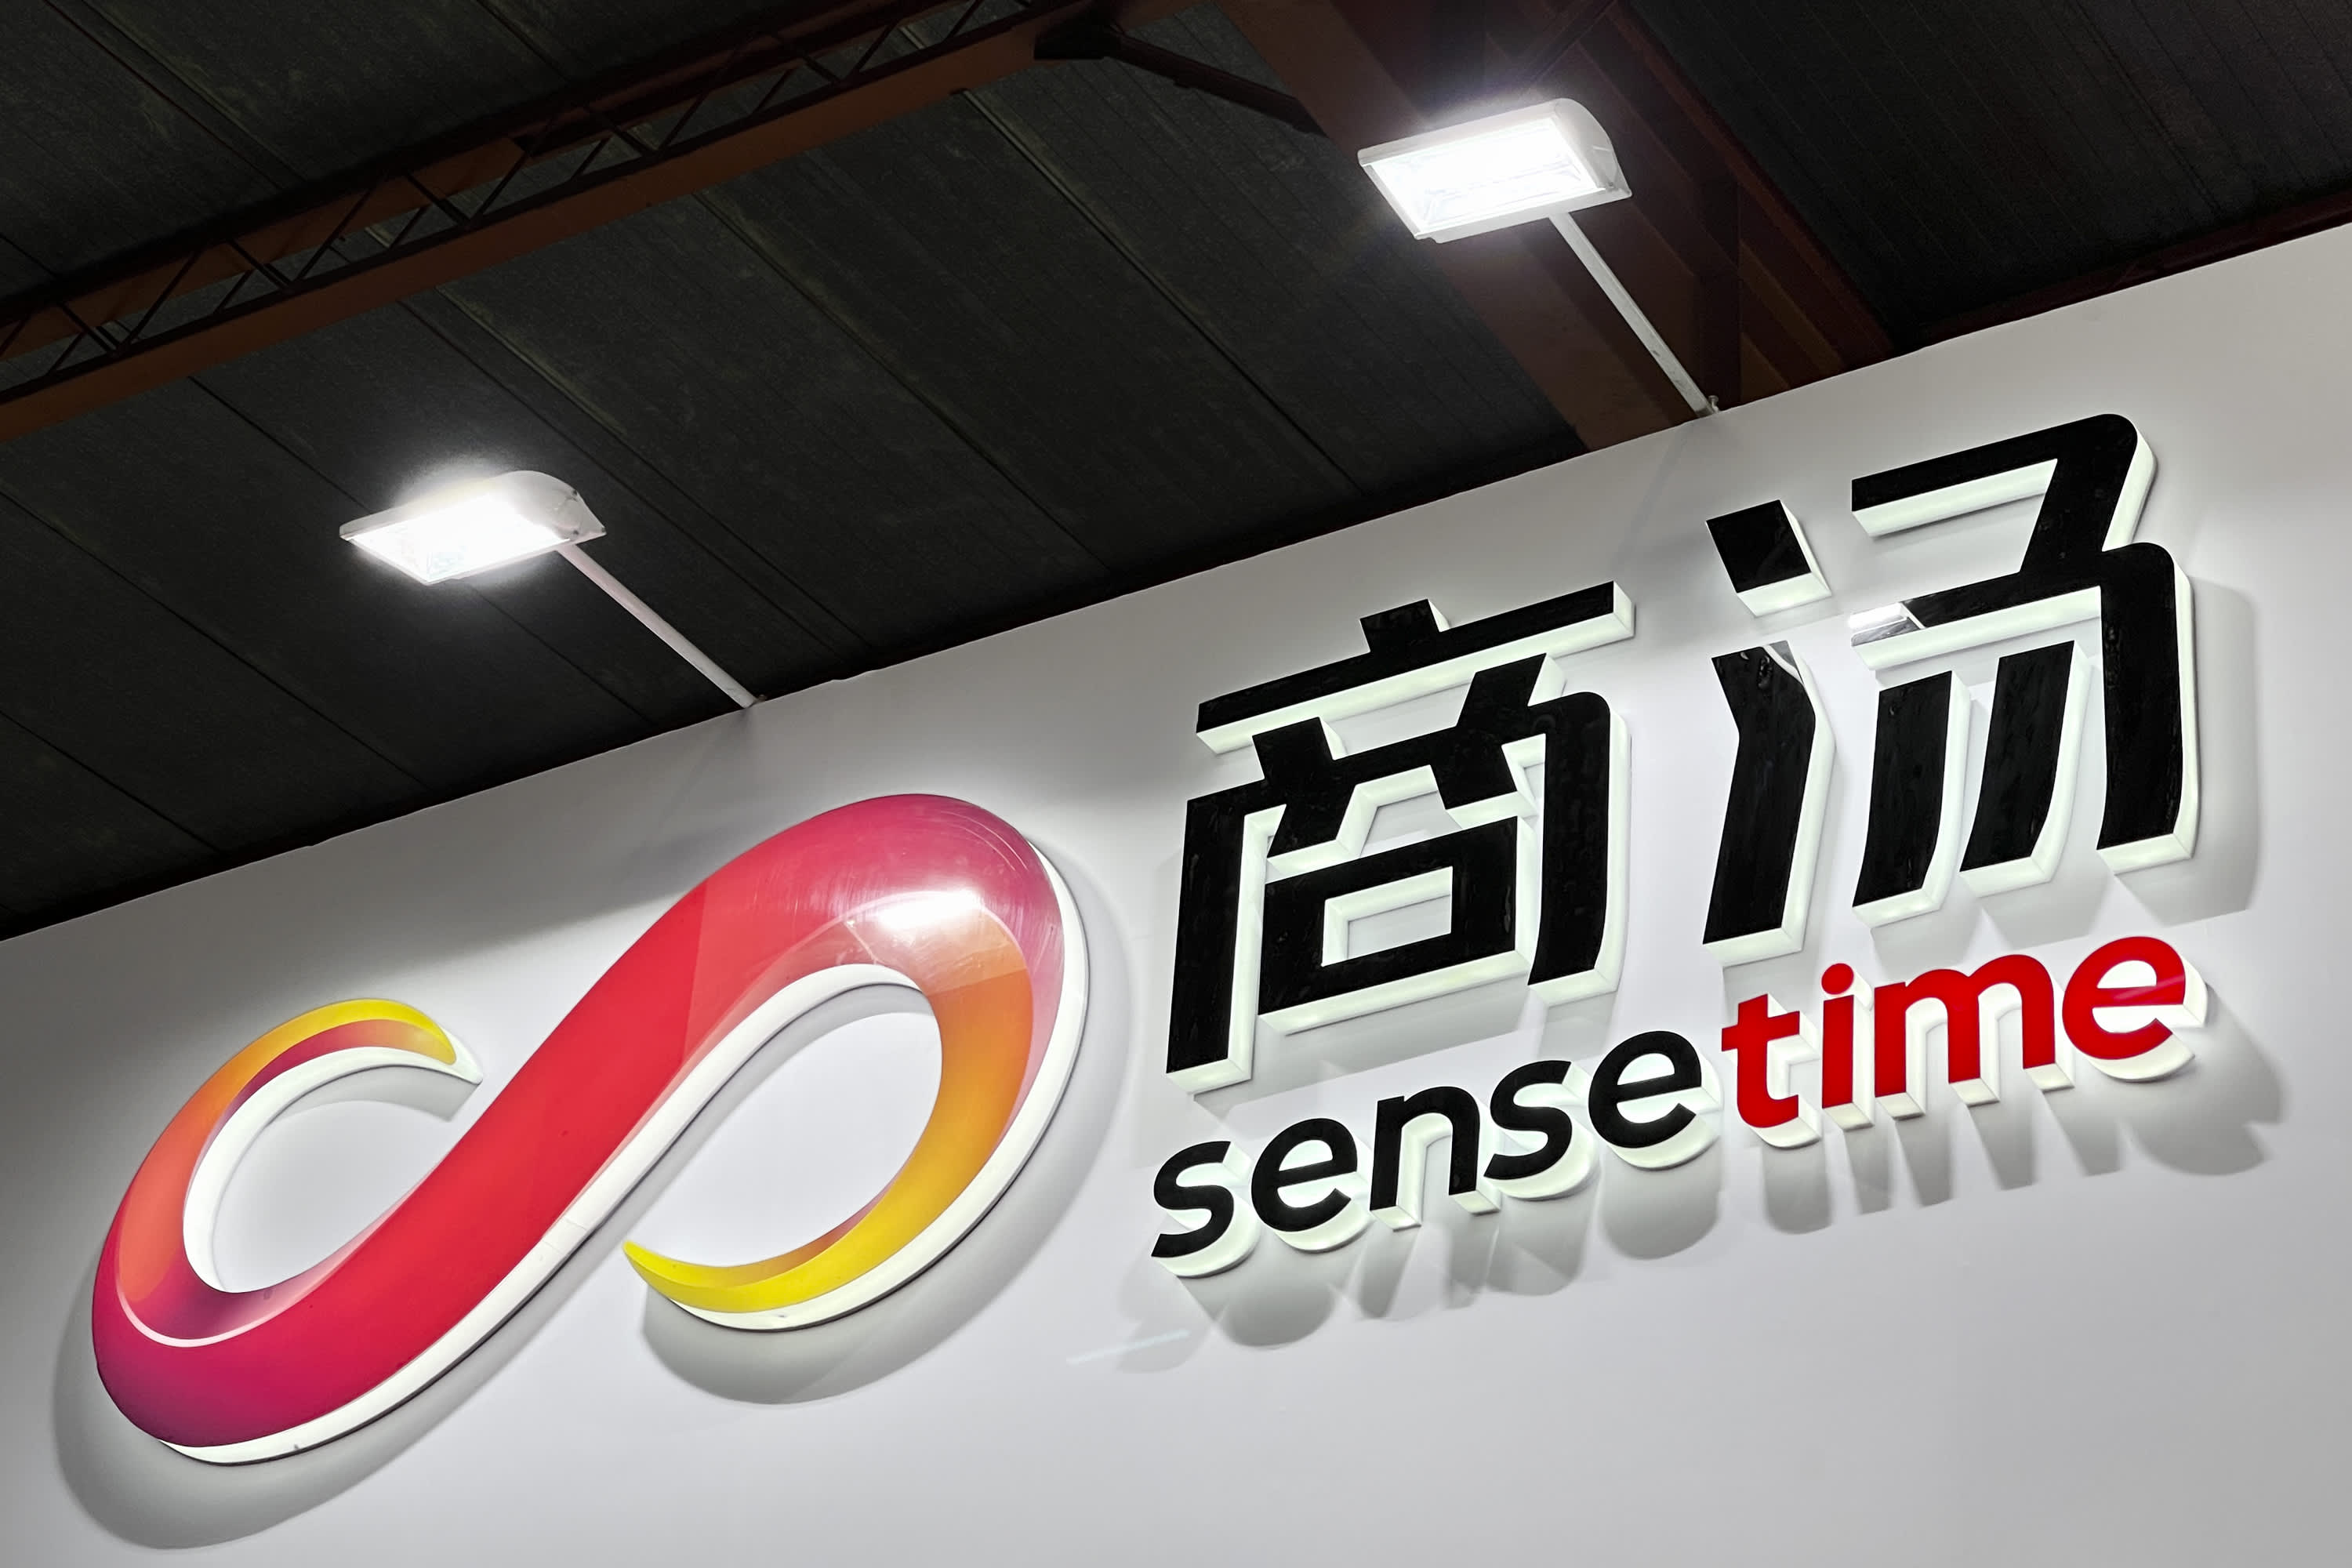 Den kinesiske AI-virksomhed SenseTime er blevet beskyldt for at overdrive sine økonomiske resultater.